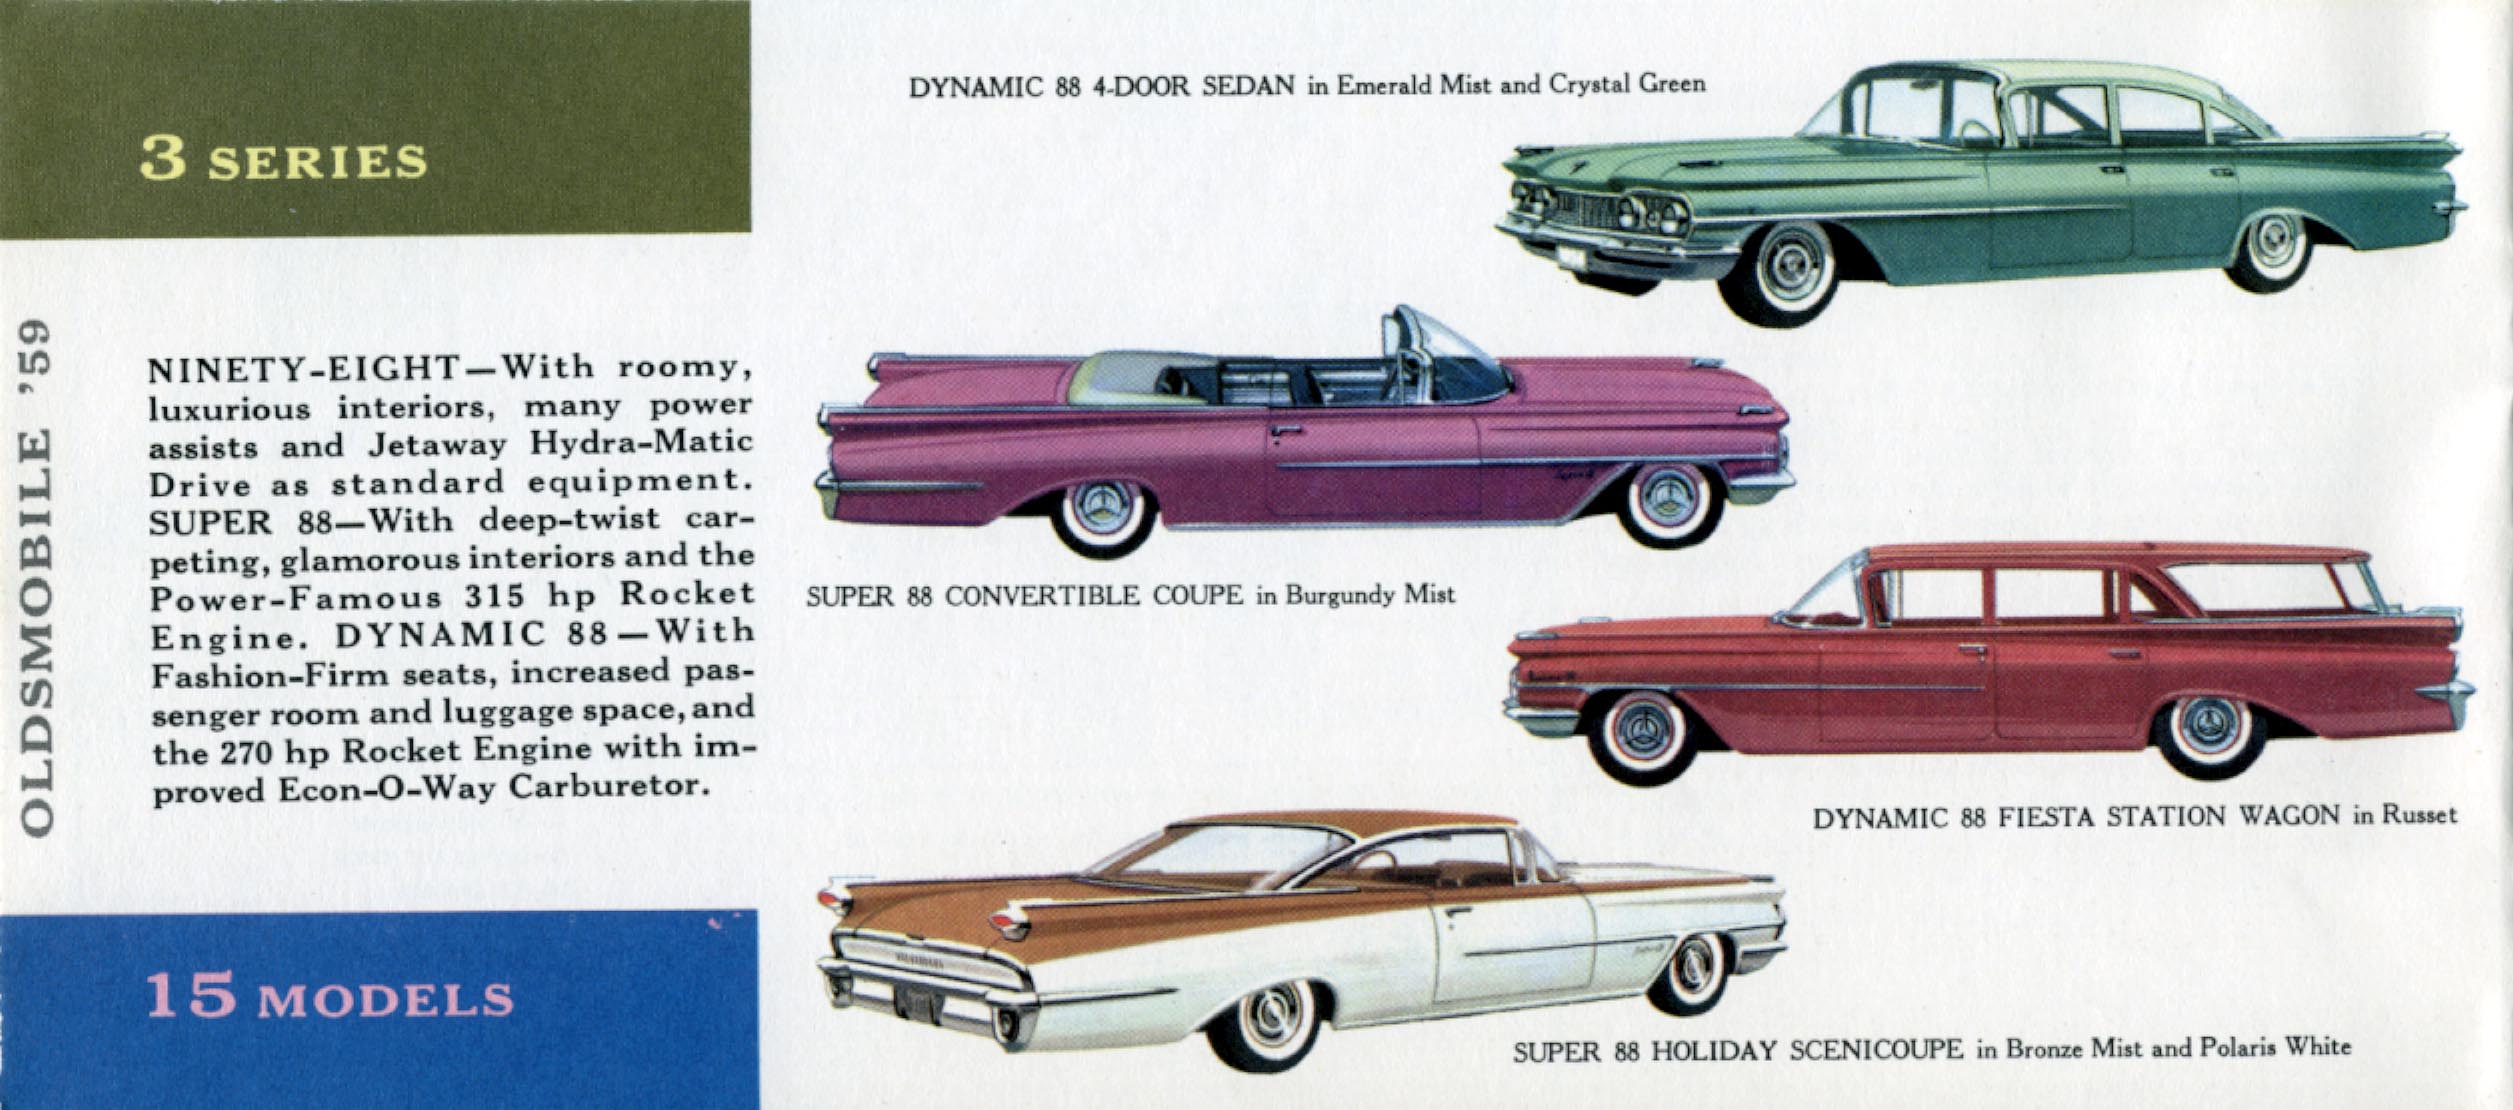 General_Motors_for_1959-20